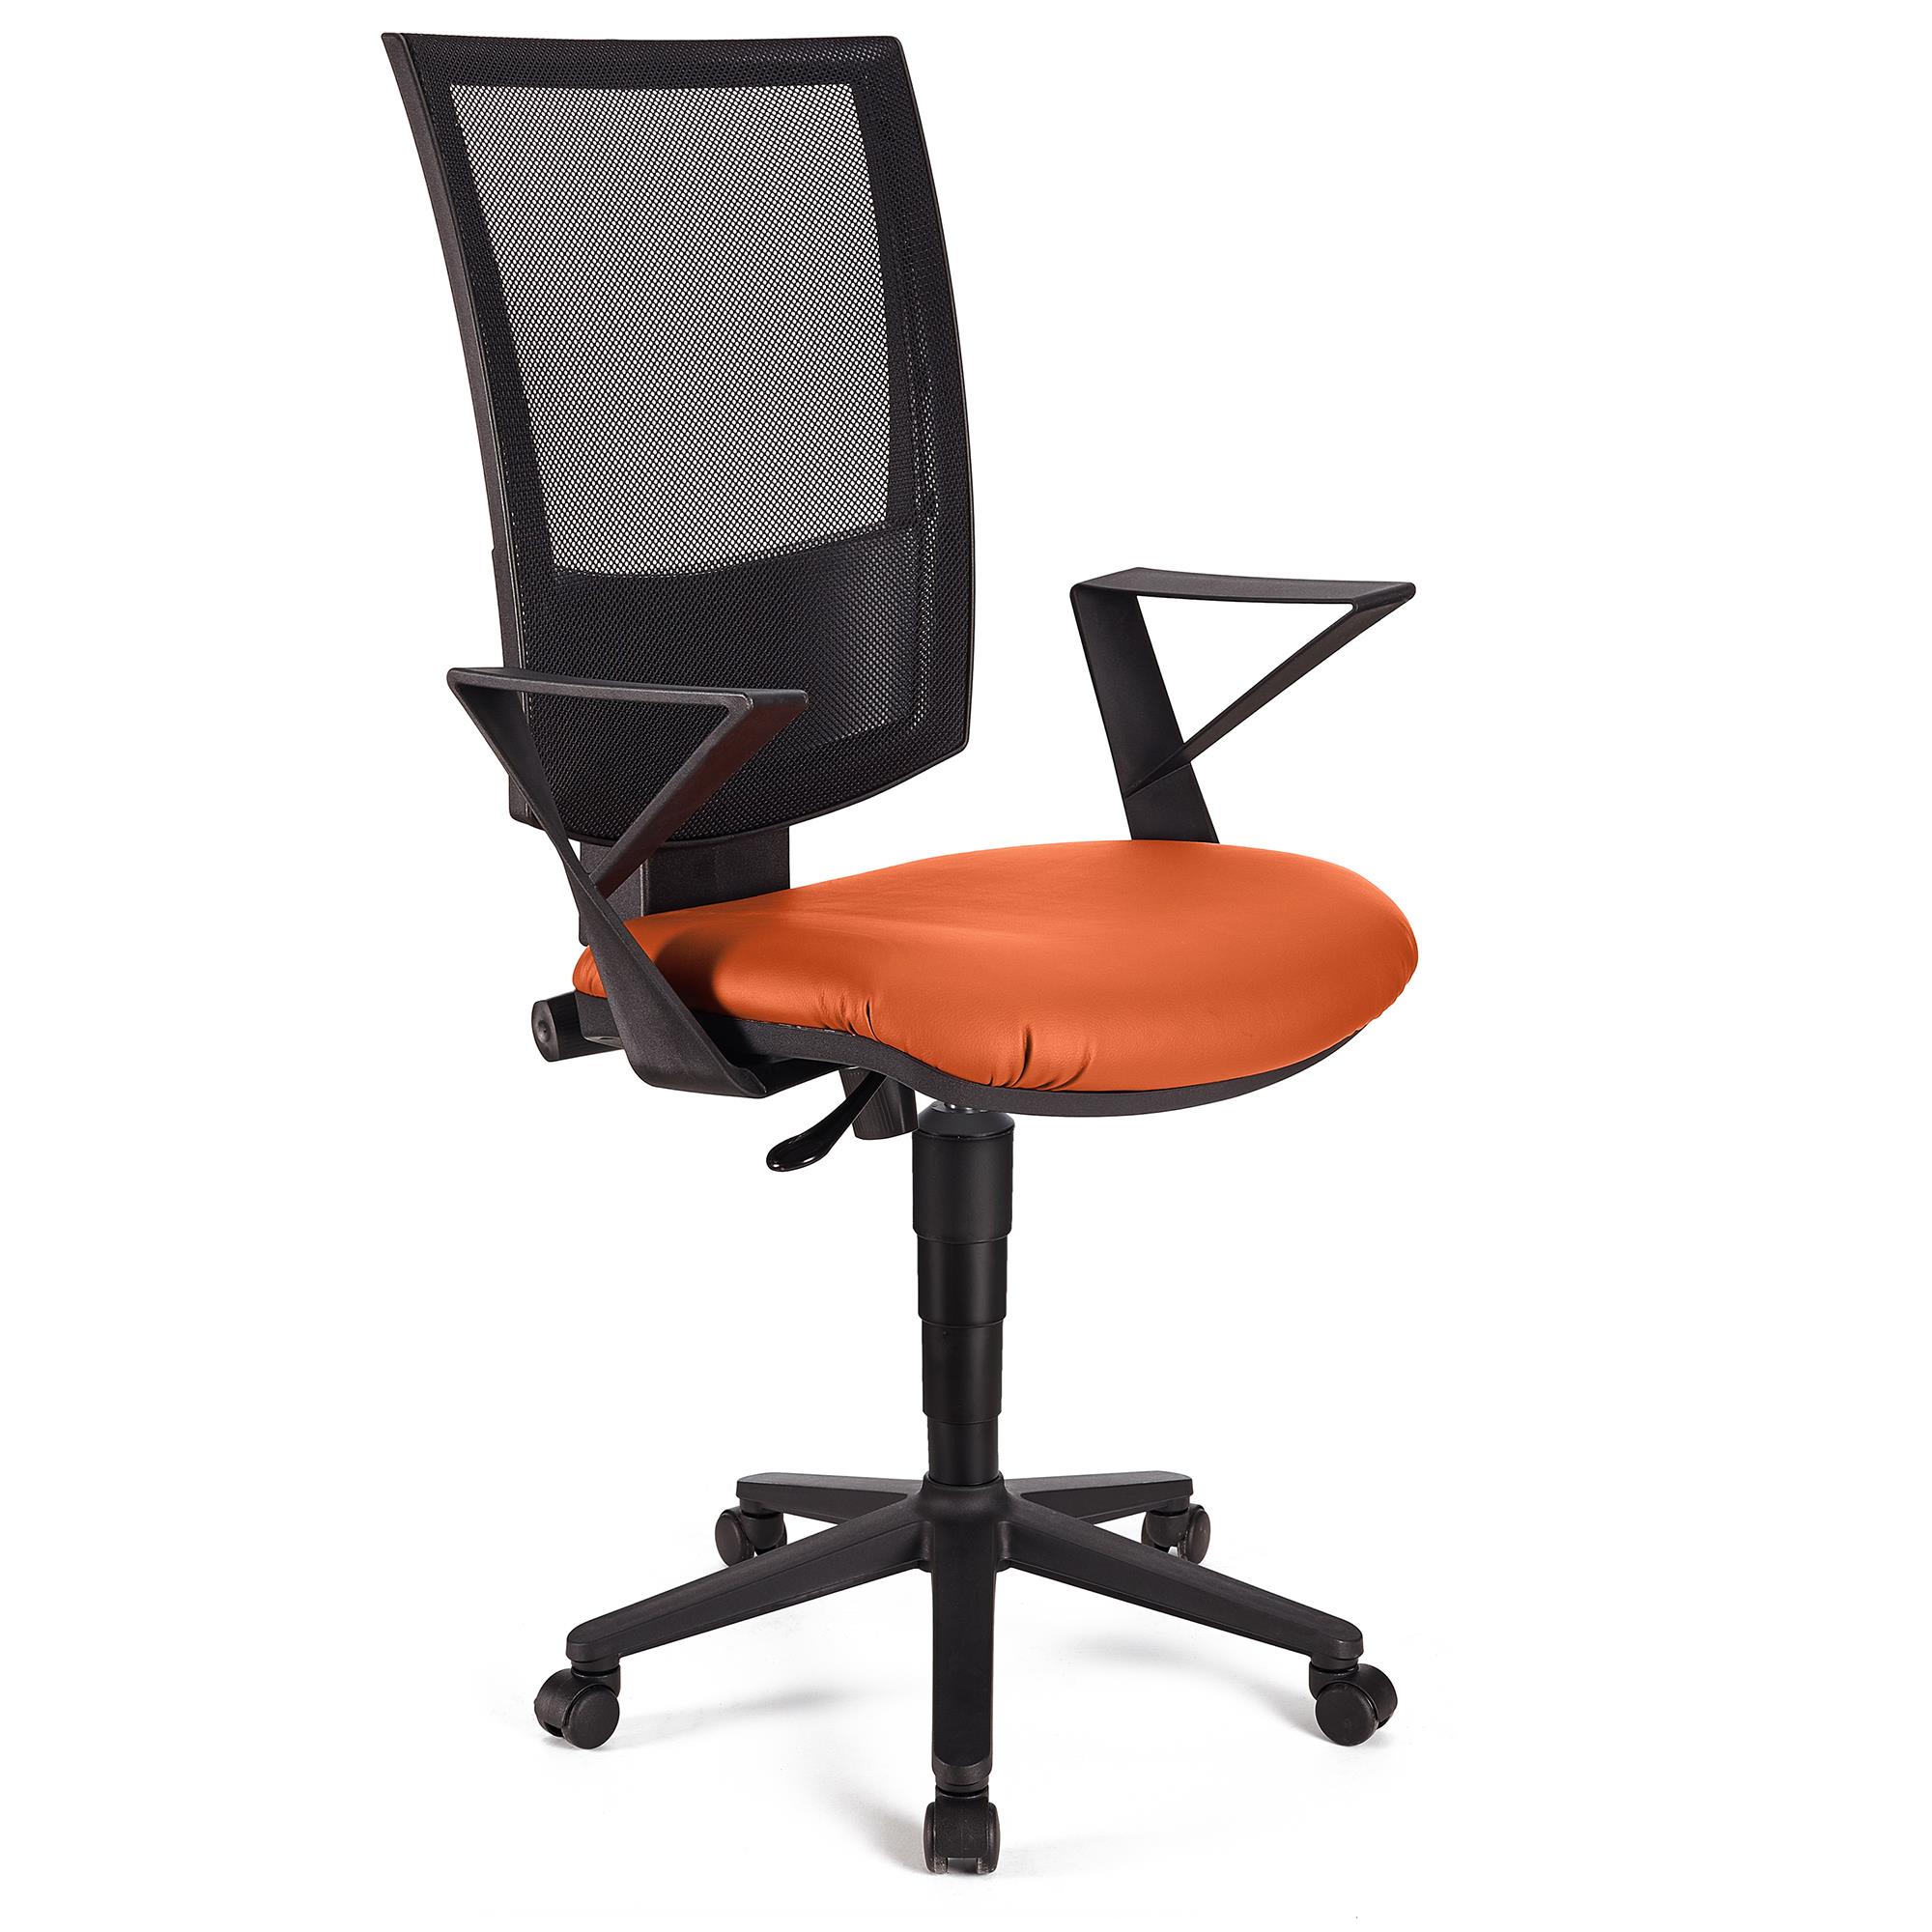 Bürostuhl PANDORA LEDER mit Armlehnen, Rückenlehne mit Netzbezug, dicke Polsterung, Farbe Orange